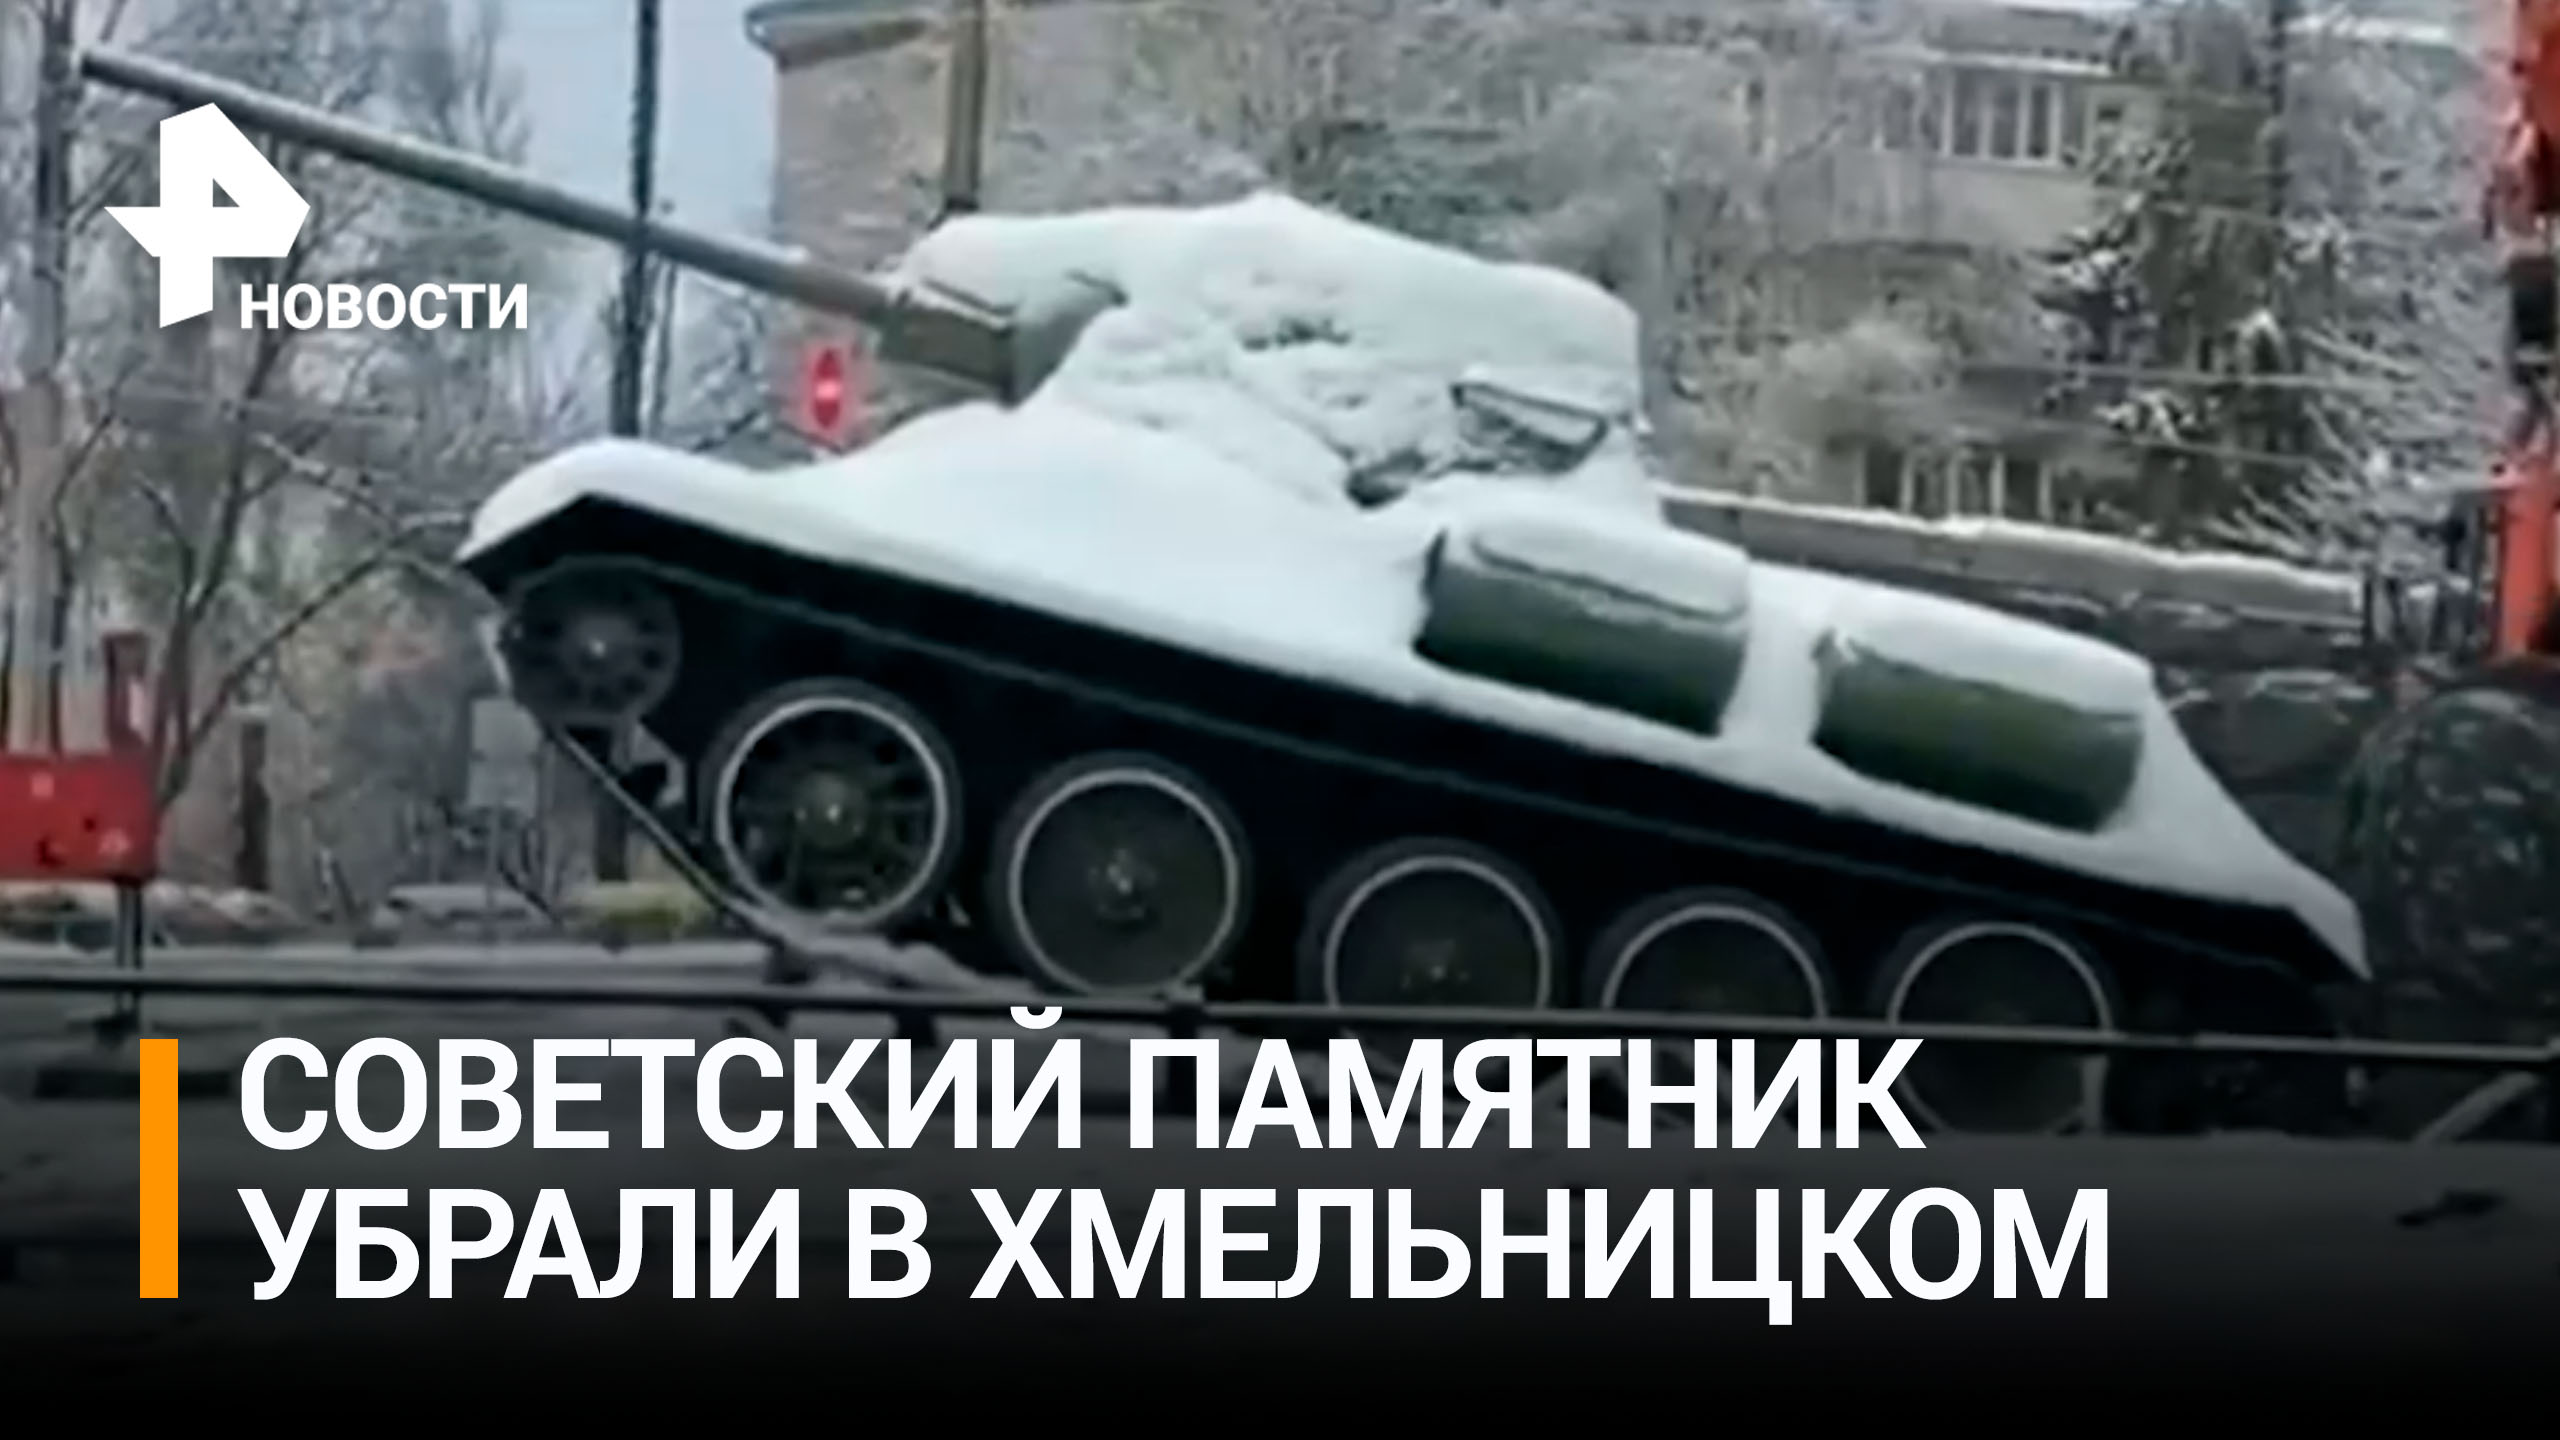 Советский памятник-танк демонтировали в Хмельницком / РЕН Новости